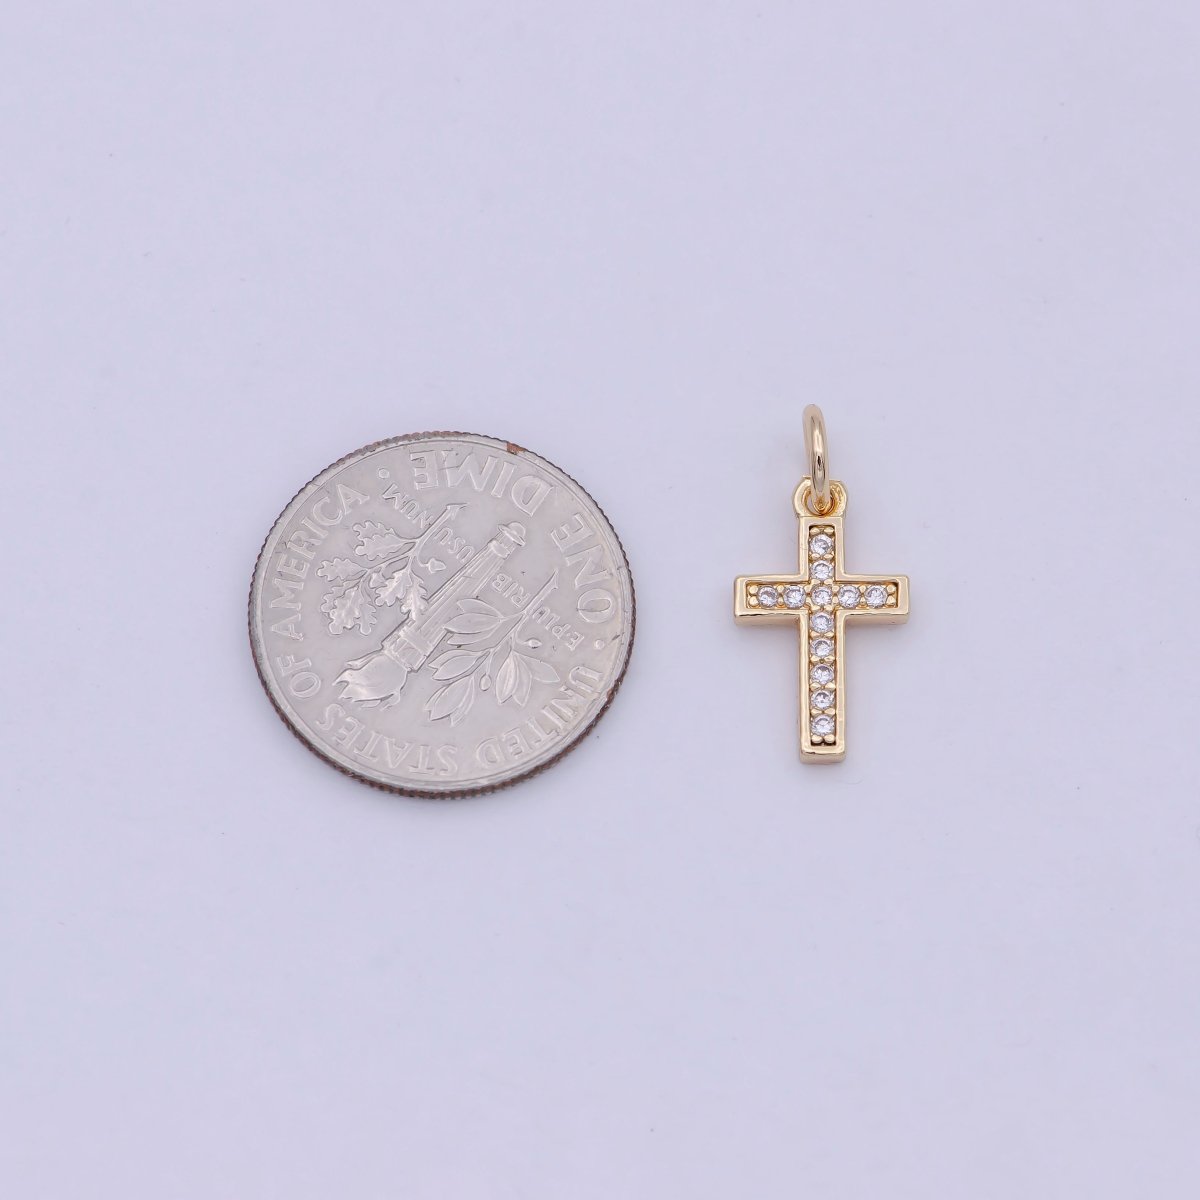 18K Gold Filled CROSS Charm Minimalist Religious Jewelry Supply W-177 - DLUXCA